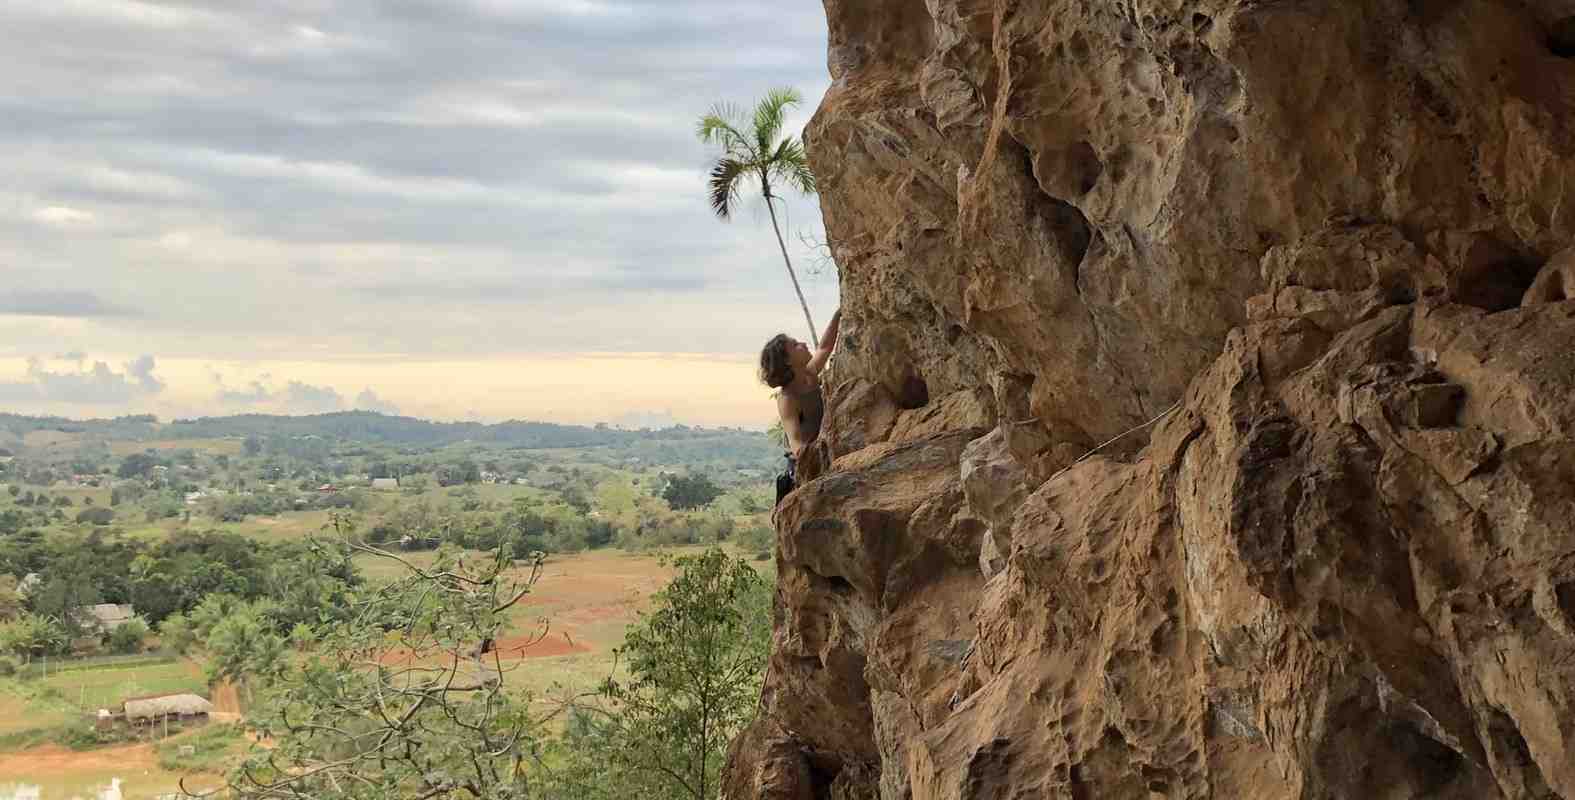 Rock Climbing in Cuba - Viñales and Playa Jibacoa